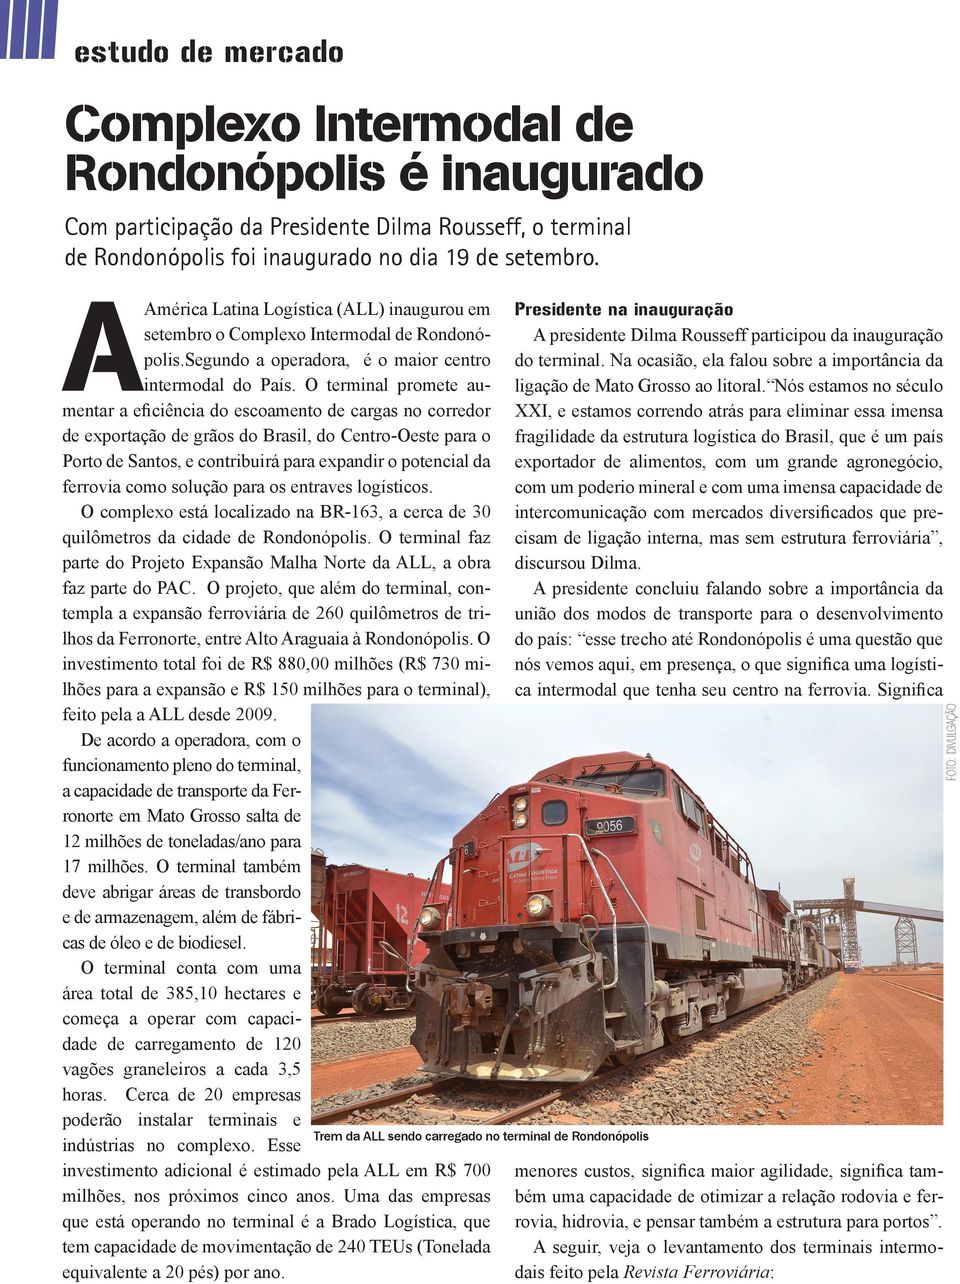 O terminal promete aumentar a eficiência do escoamento de cargas no corredor de exportação de grãos do Brasil, do Centro-Oeste para o Porto de Santos, e contribuirá para expandir o potencial da